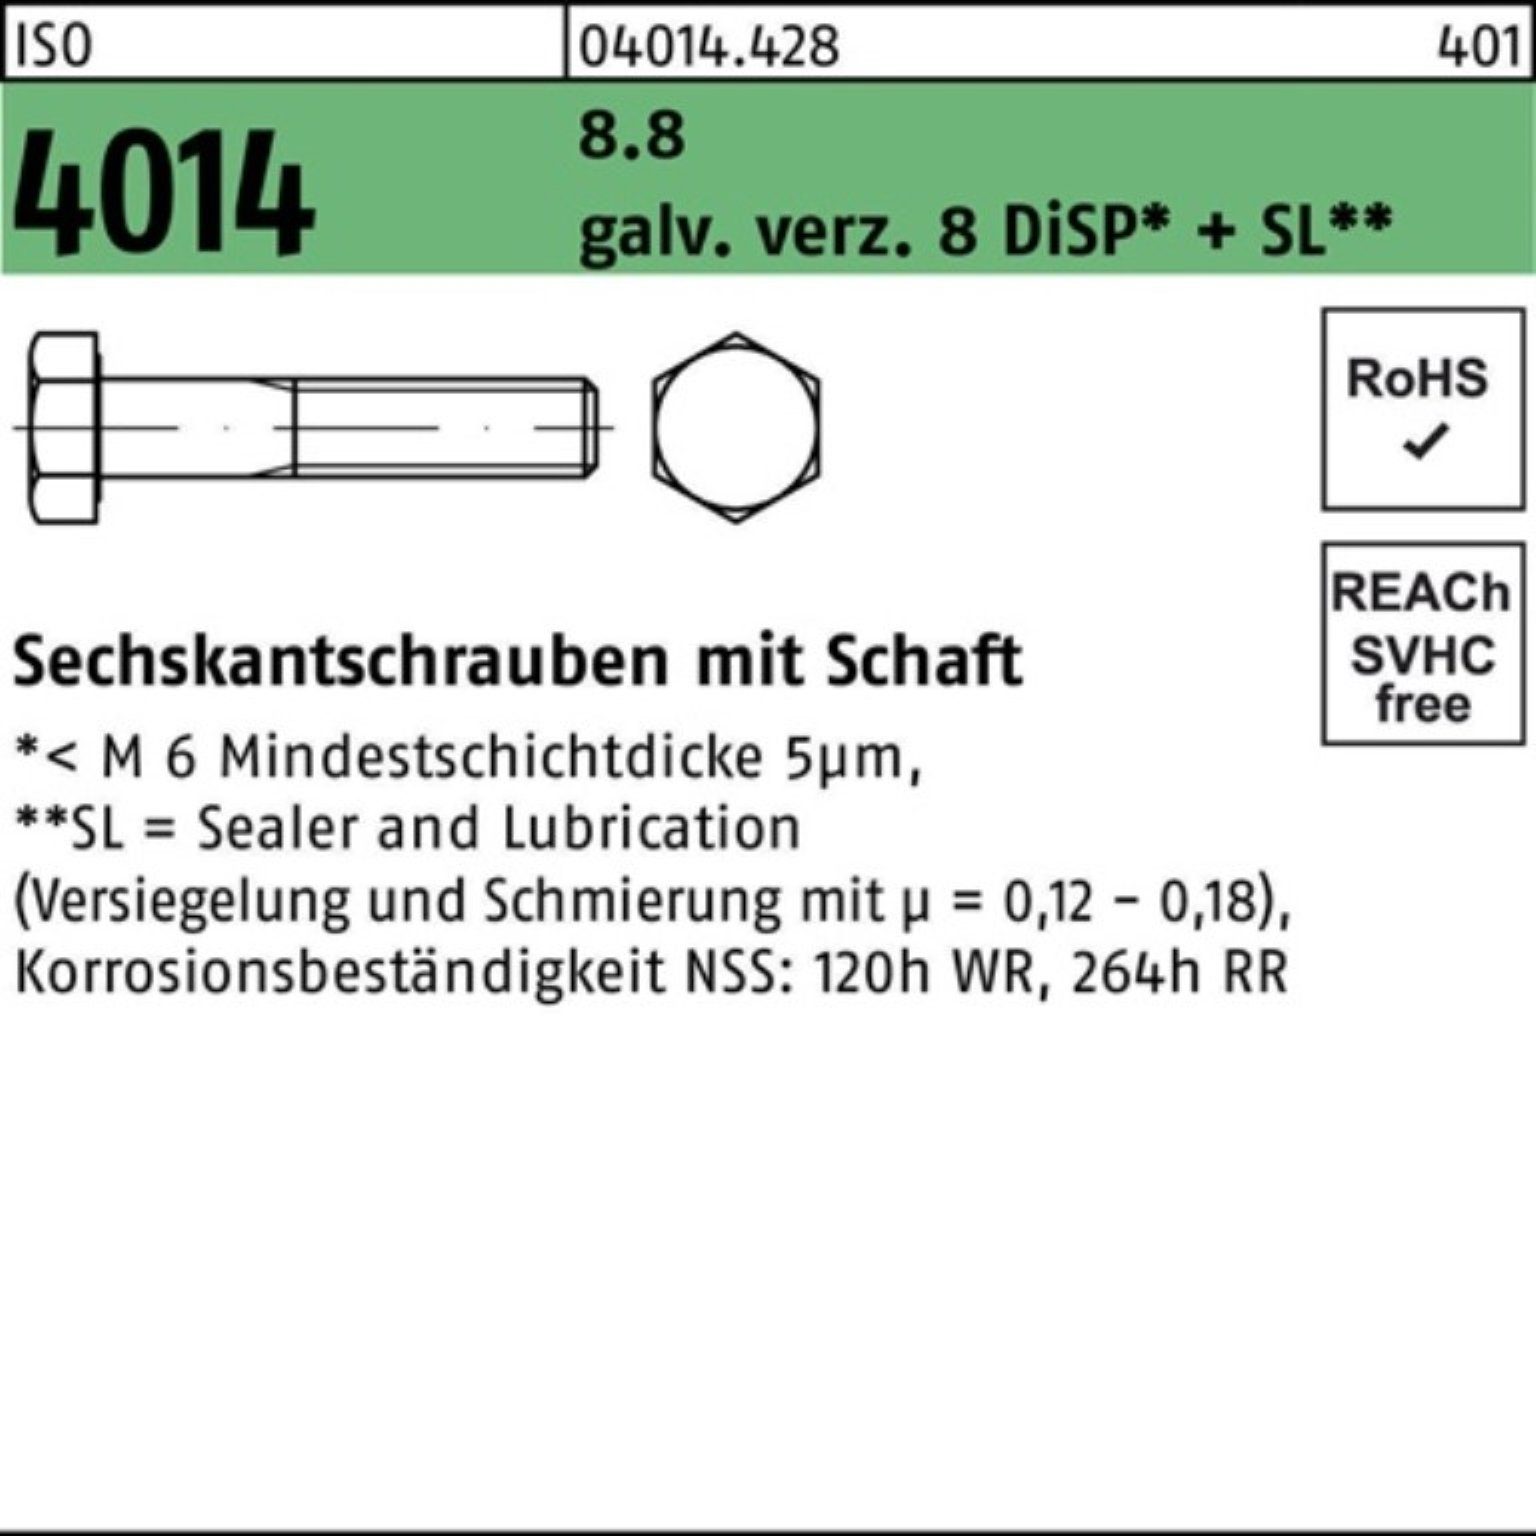 Schaft Bufab 8 ISO 8.8 4014 Sechskantschraube M14x80 D galv.verz. Sechskantschraube Pack 100er